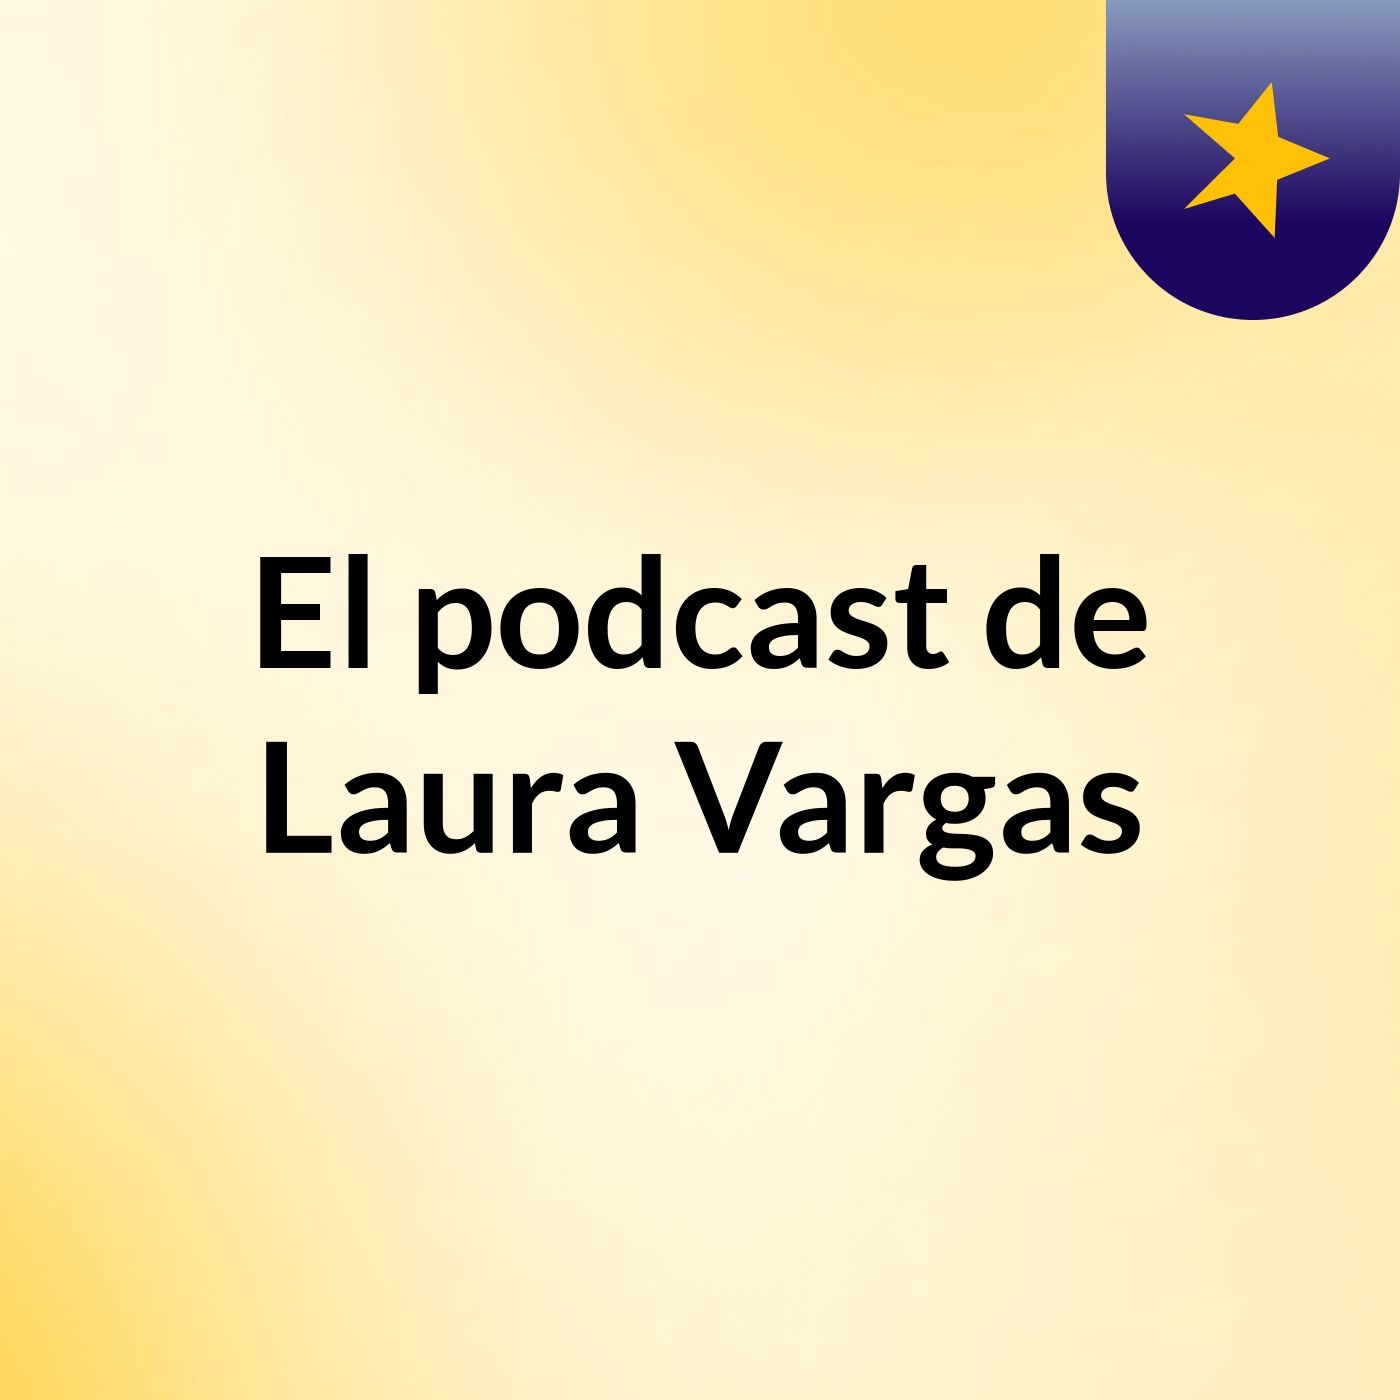 El podcast de Laura Vargas